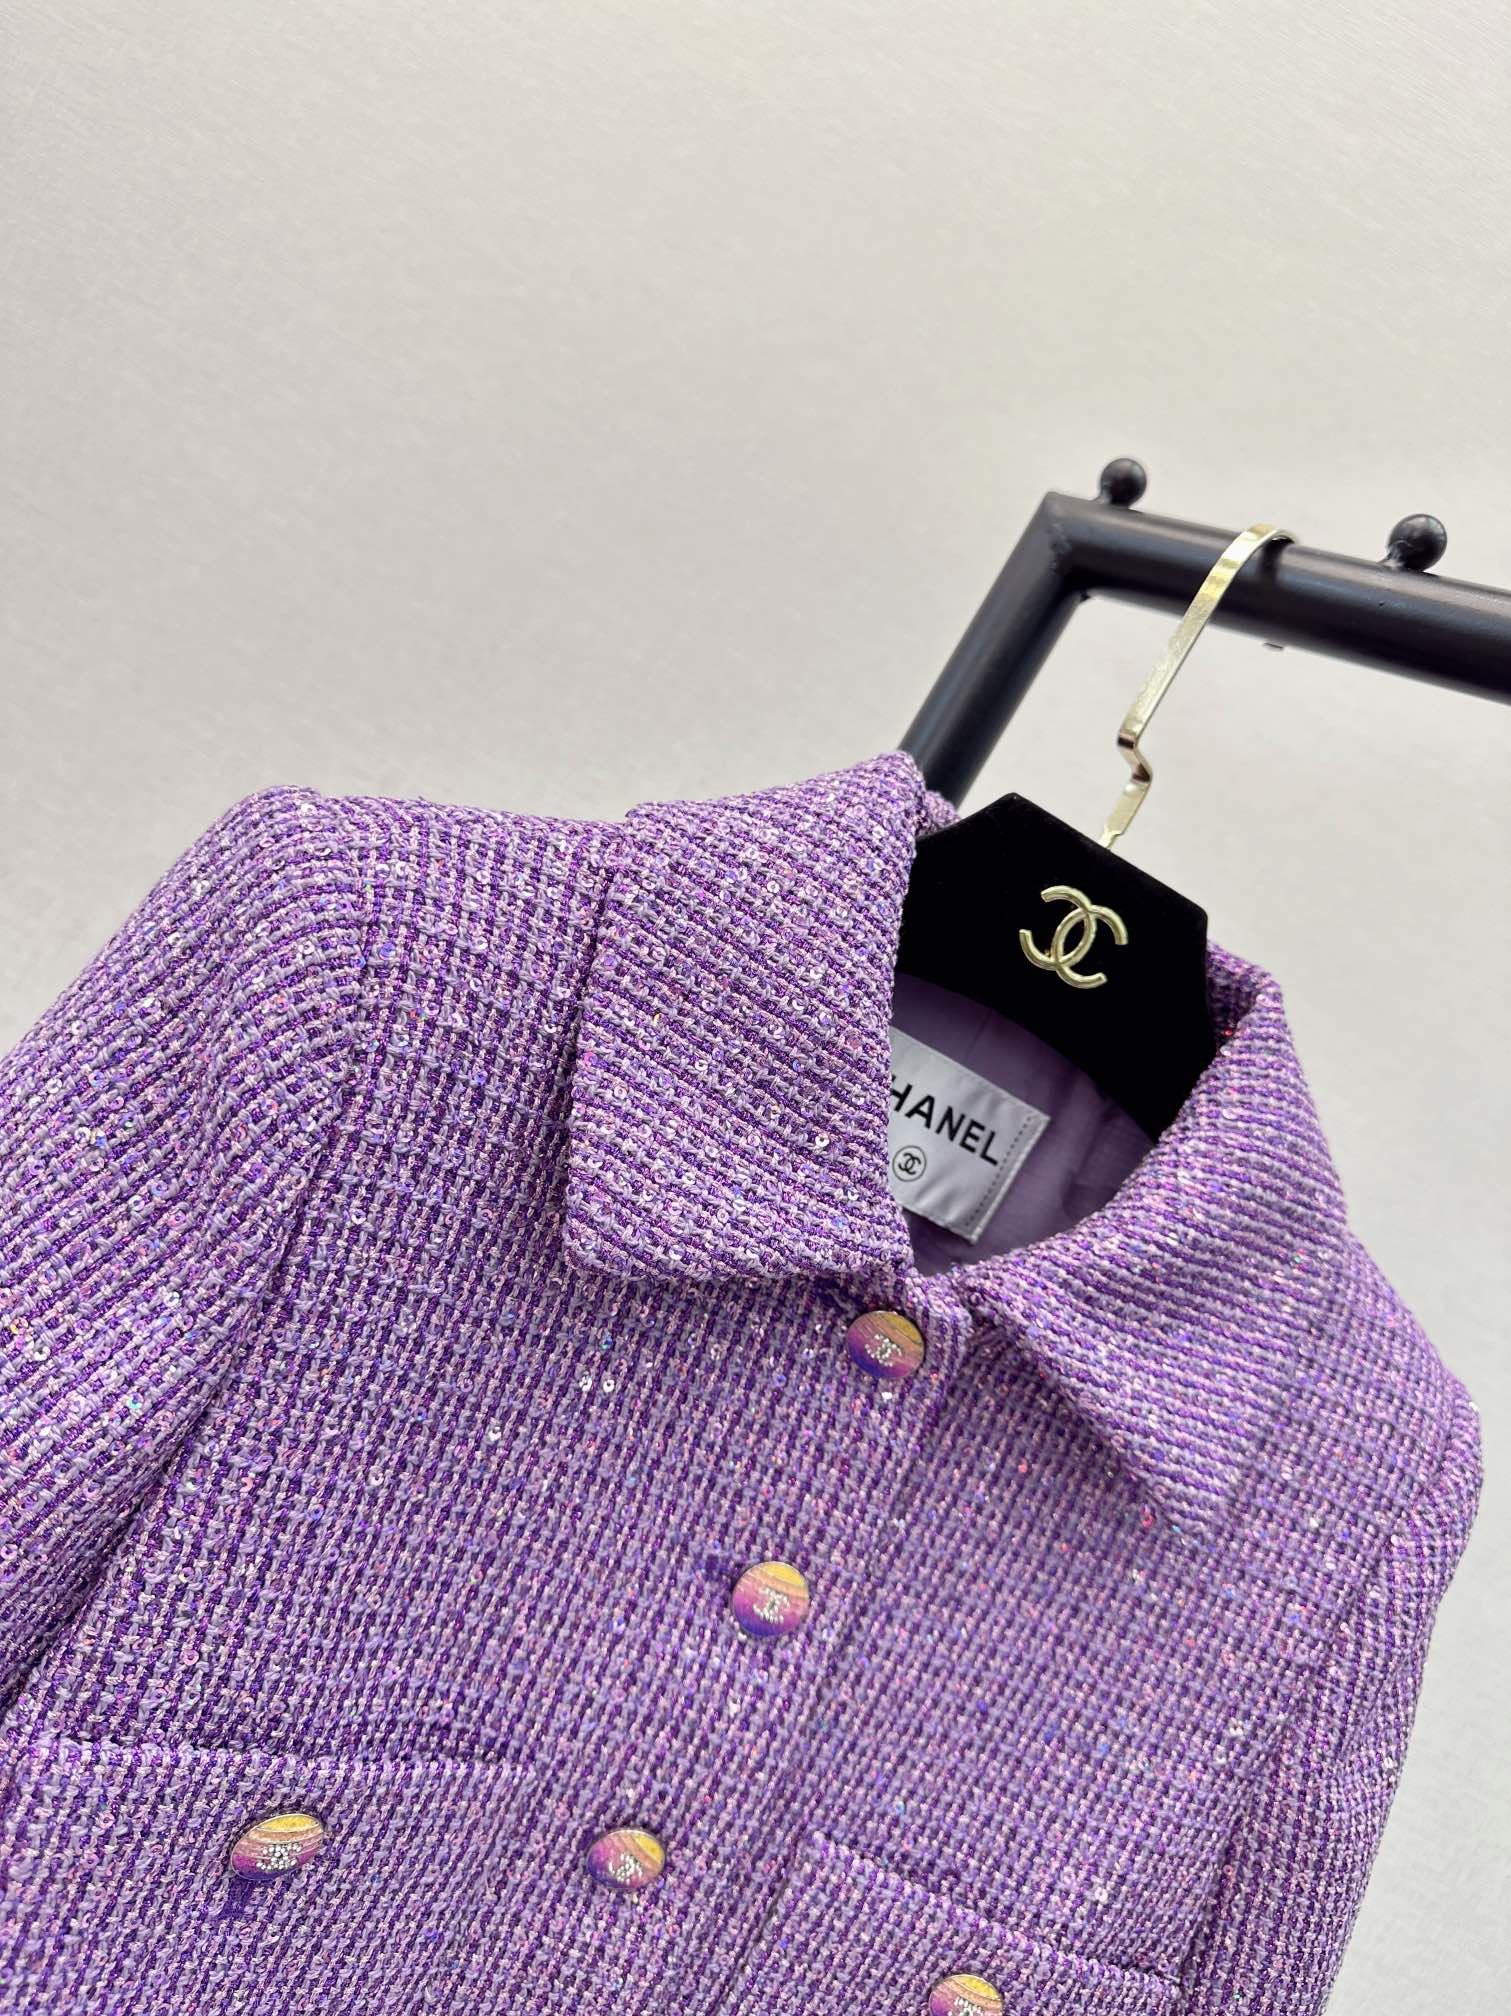 独家首发C家24Ss早春最新款超美紫色系亮片外套3D立体剪裁版型上身巨显瘦简洁不繁重的廓形任何身材都好穿